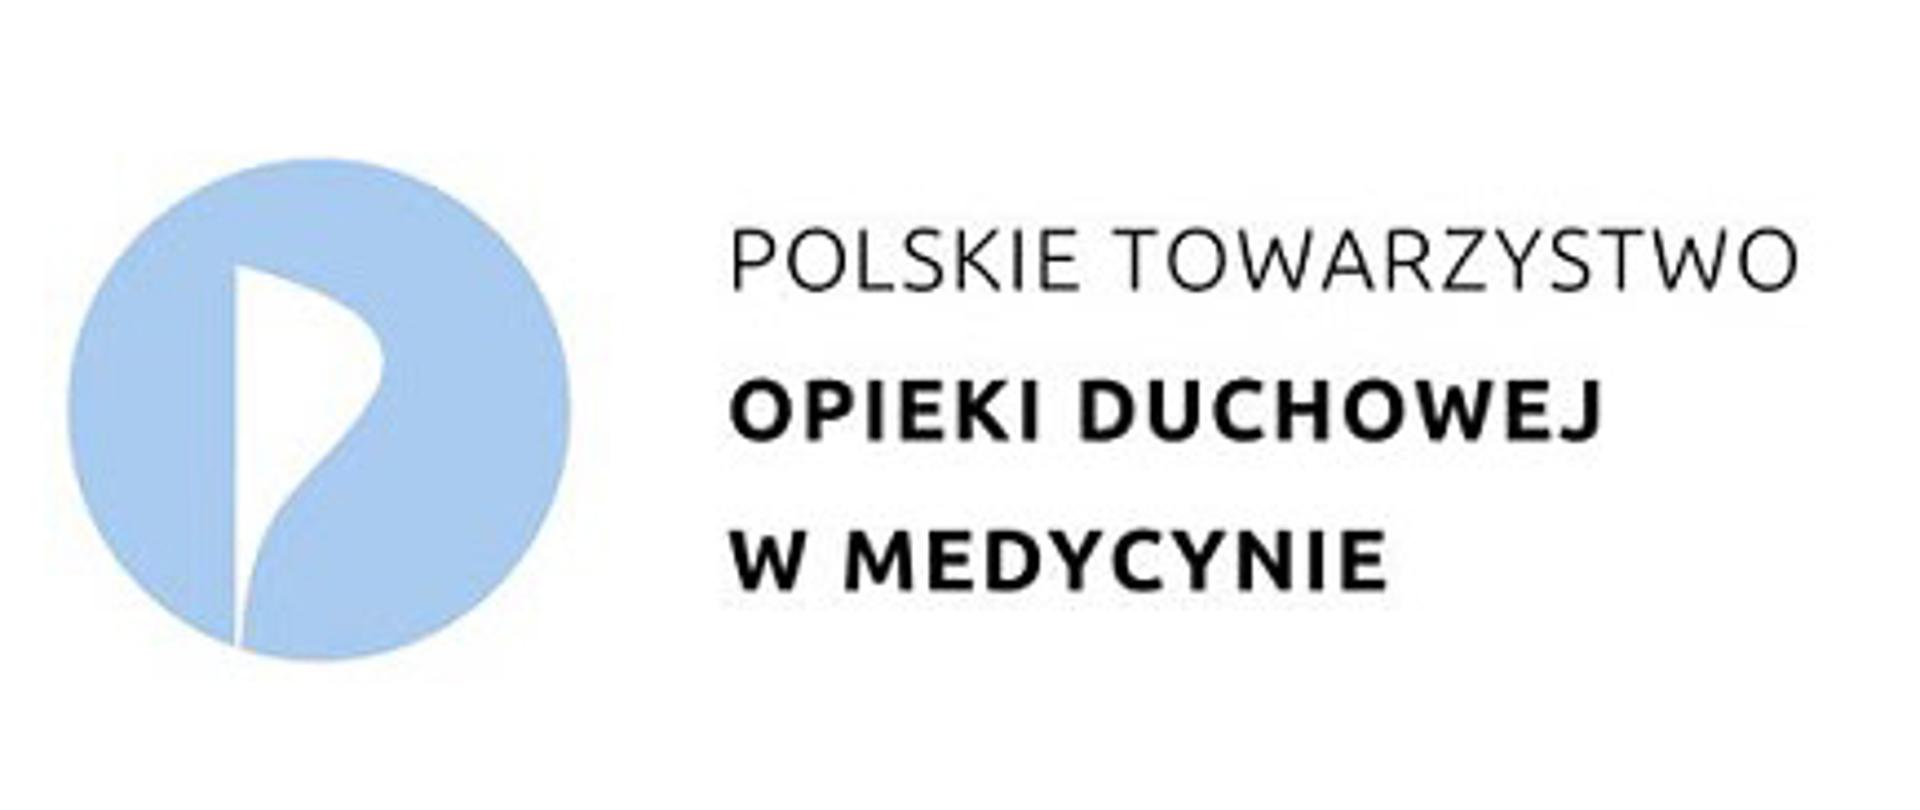 Polskie Towarzystwo Opieki Duchowej w Medycynie